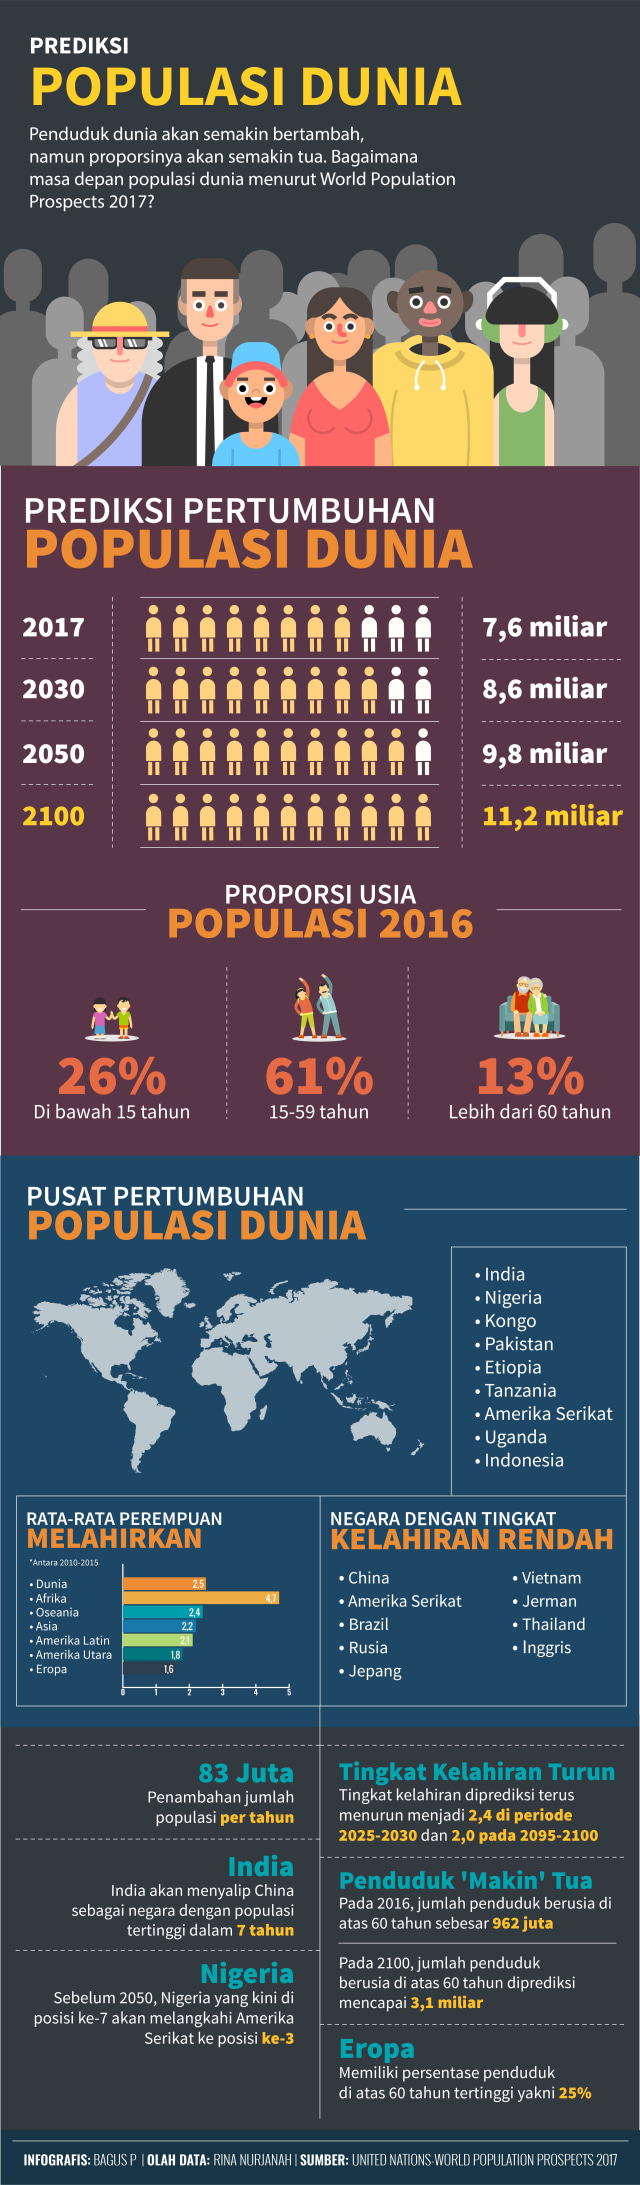 Infografis Prediksi Populasi Dunia Mendatang (Foto: Bagus Permadi/kumparan)